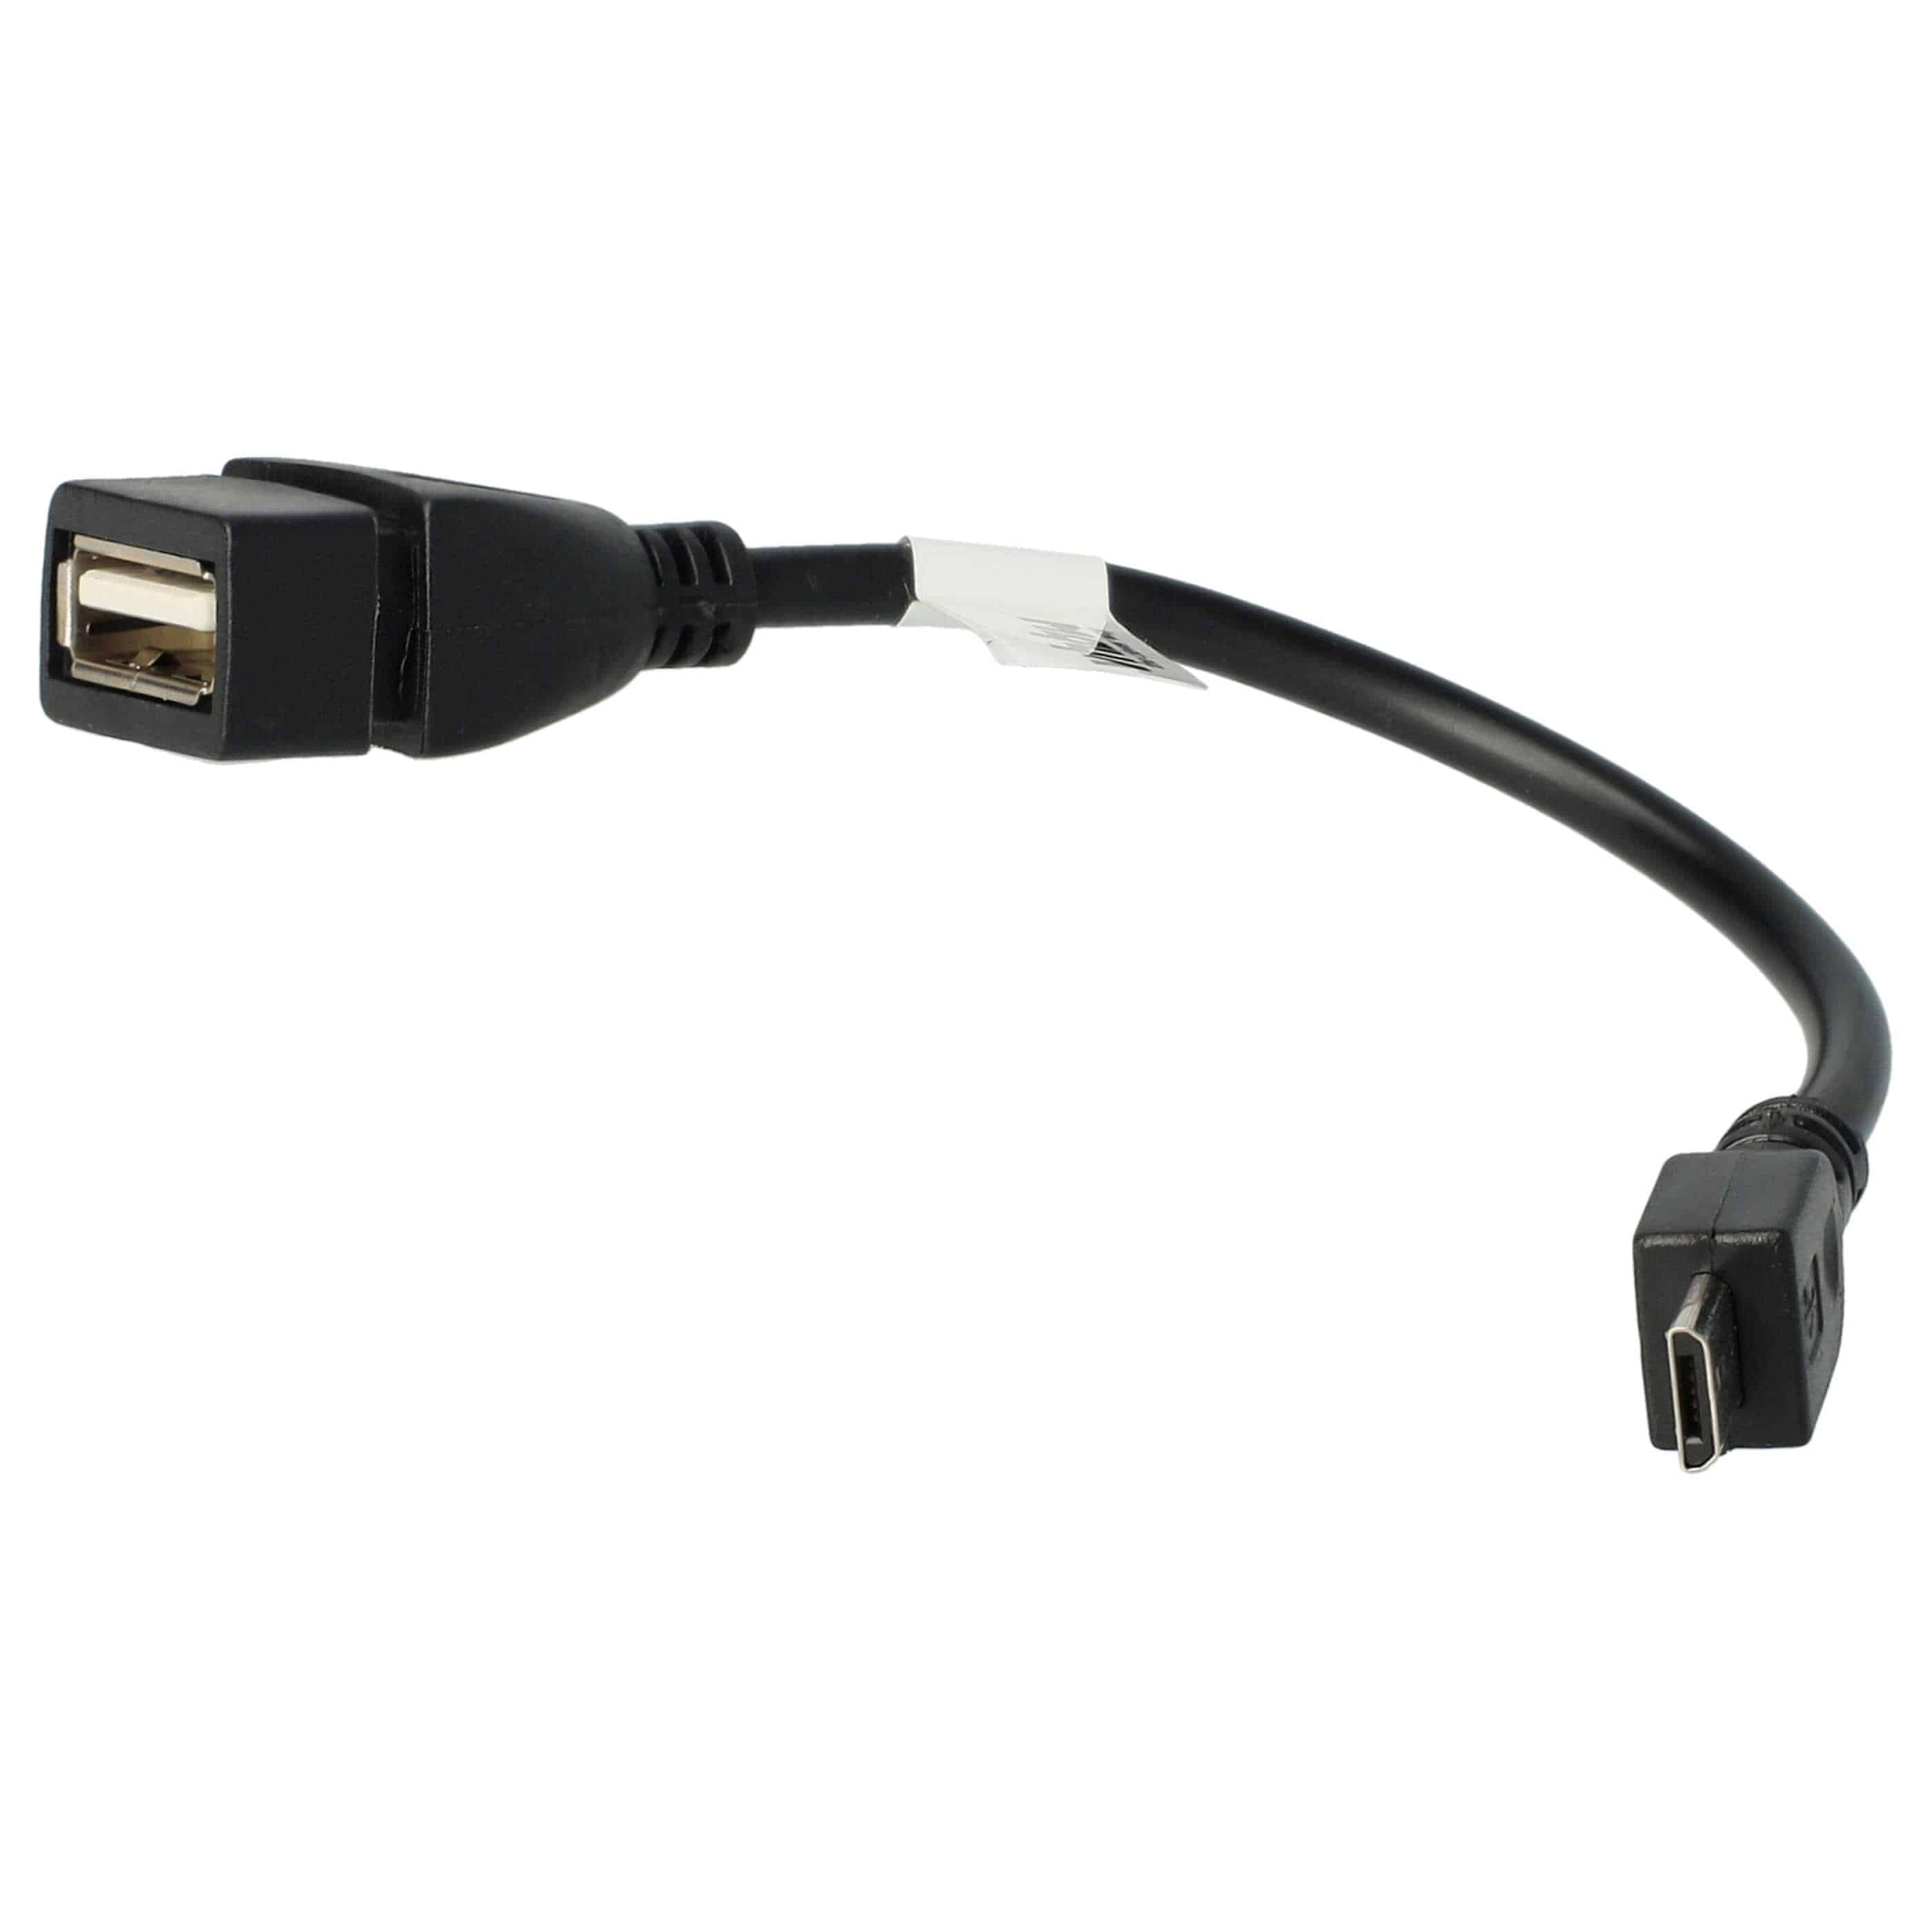 Adapteur OTG Micro-USB à USB (femelle) pour smartphone, tablette, ordinateur portable